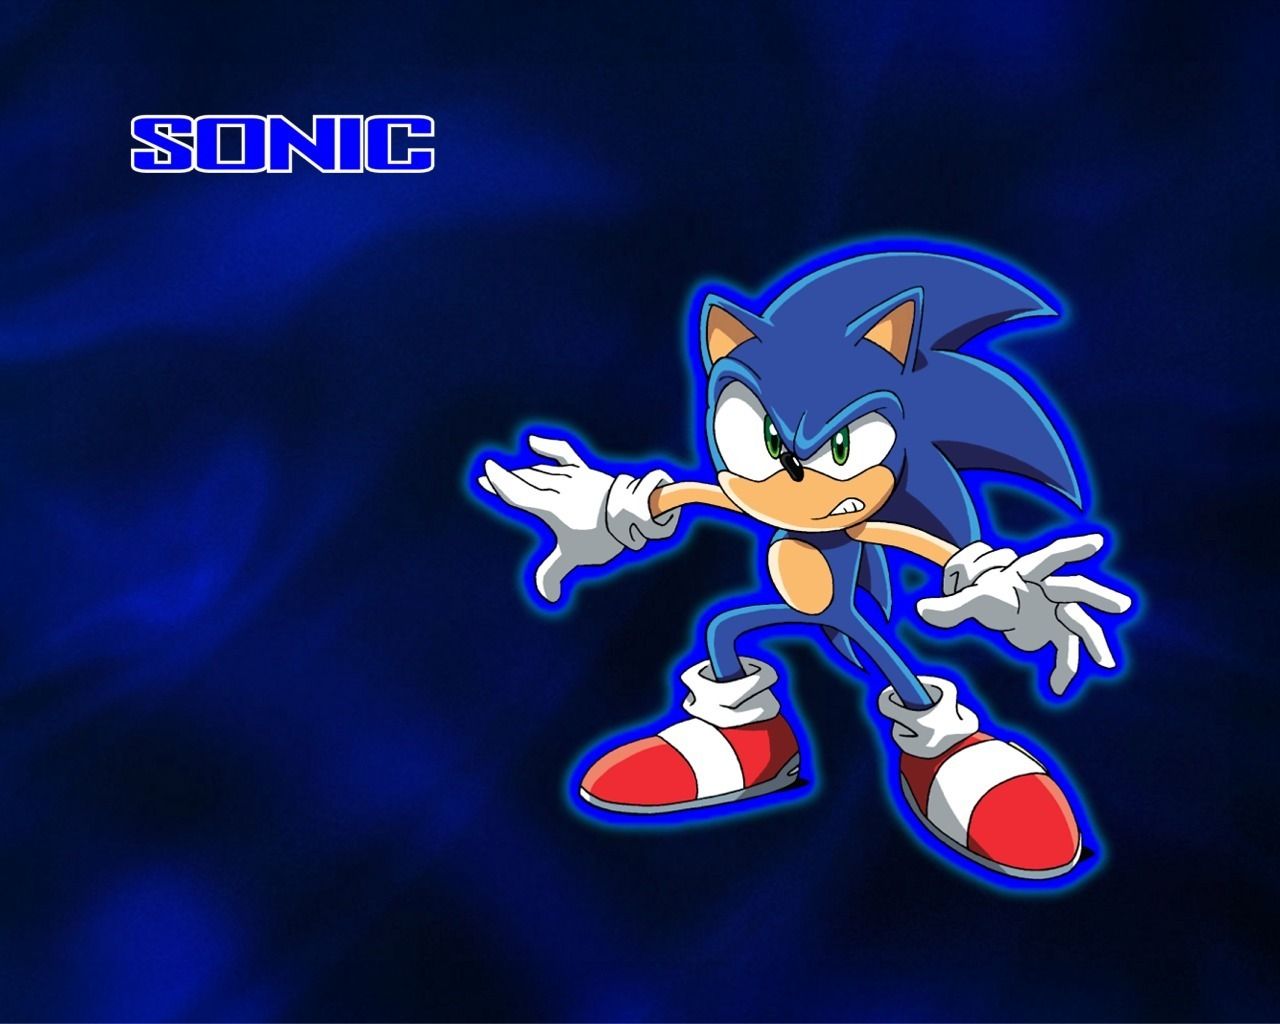 Fondos de pantalla de Sonic - Sonic the Hedgehog Fan Art (1481662) - fanpop